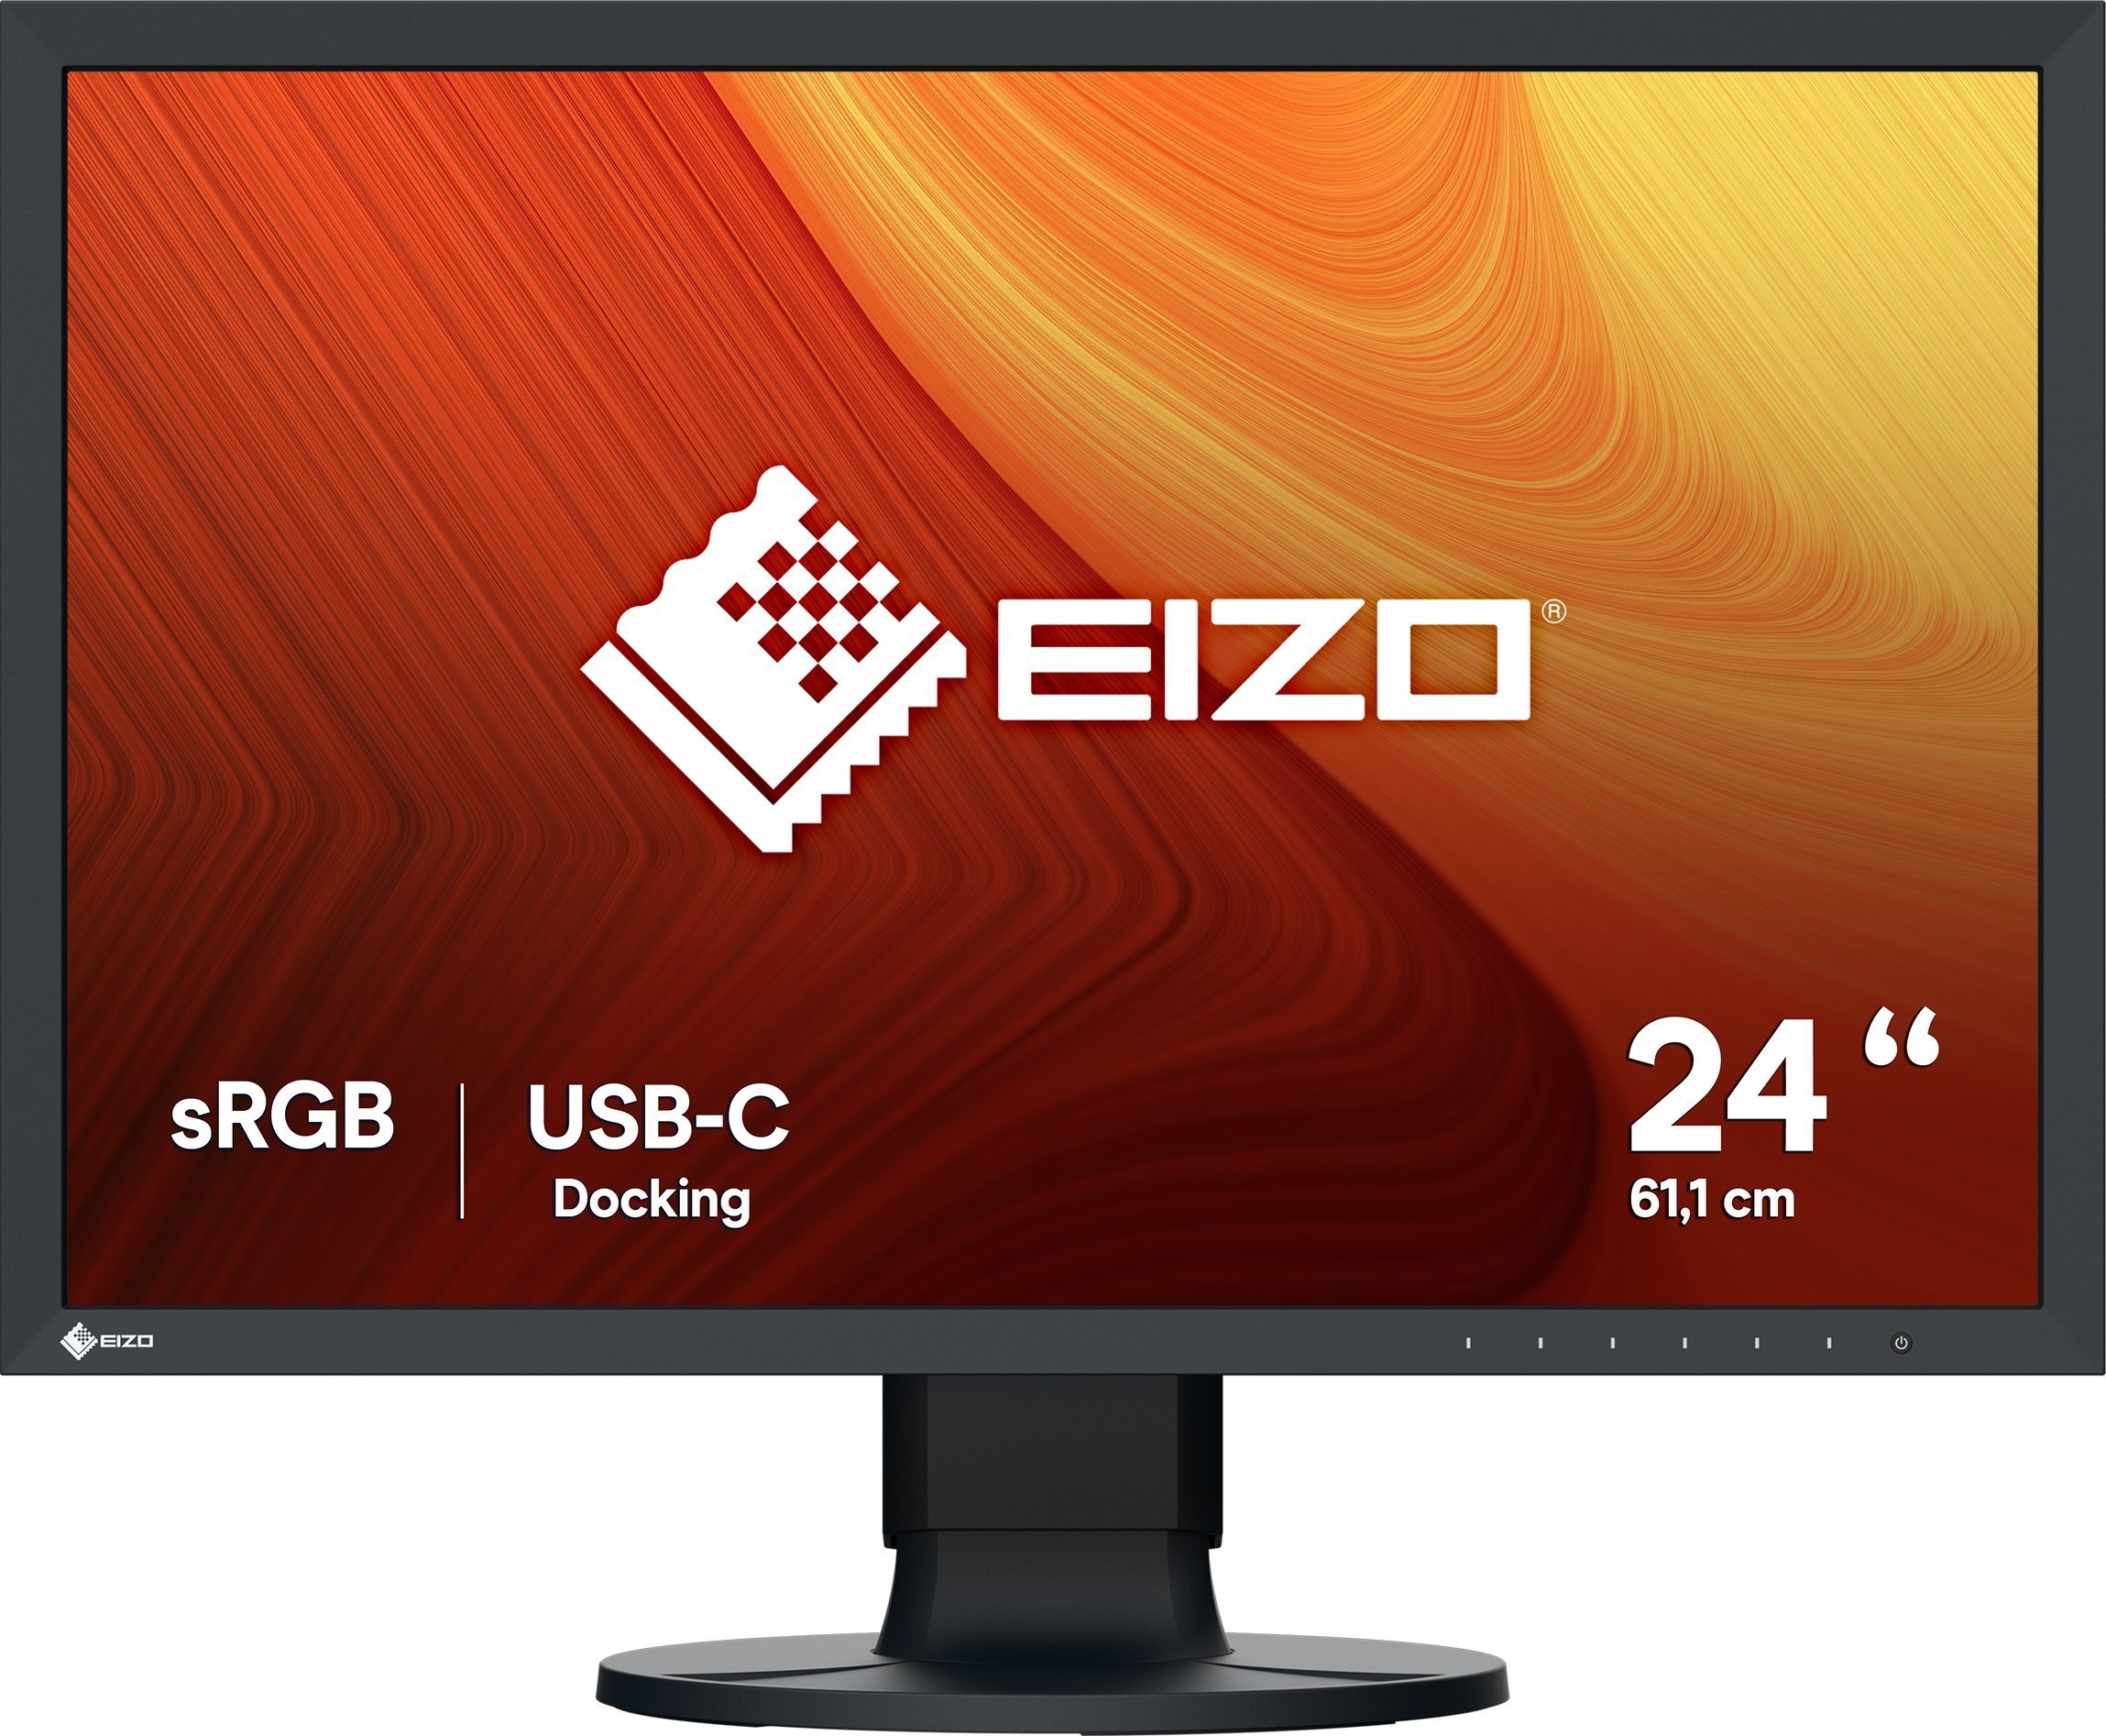 Eizo EIZO ColorEdge CS2400R - monitor LCD 24` z kalibracją sprzętową, licencja ColorNavigator, 100% sRGB